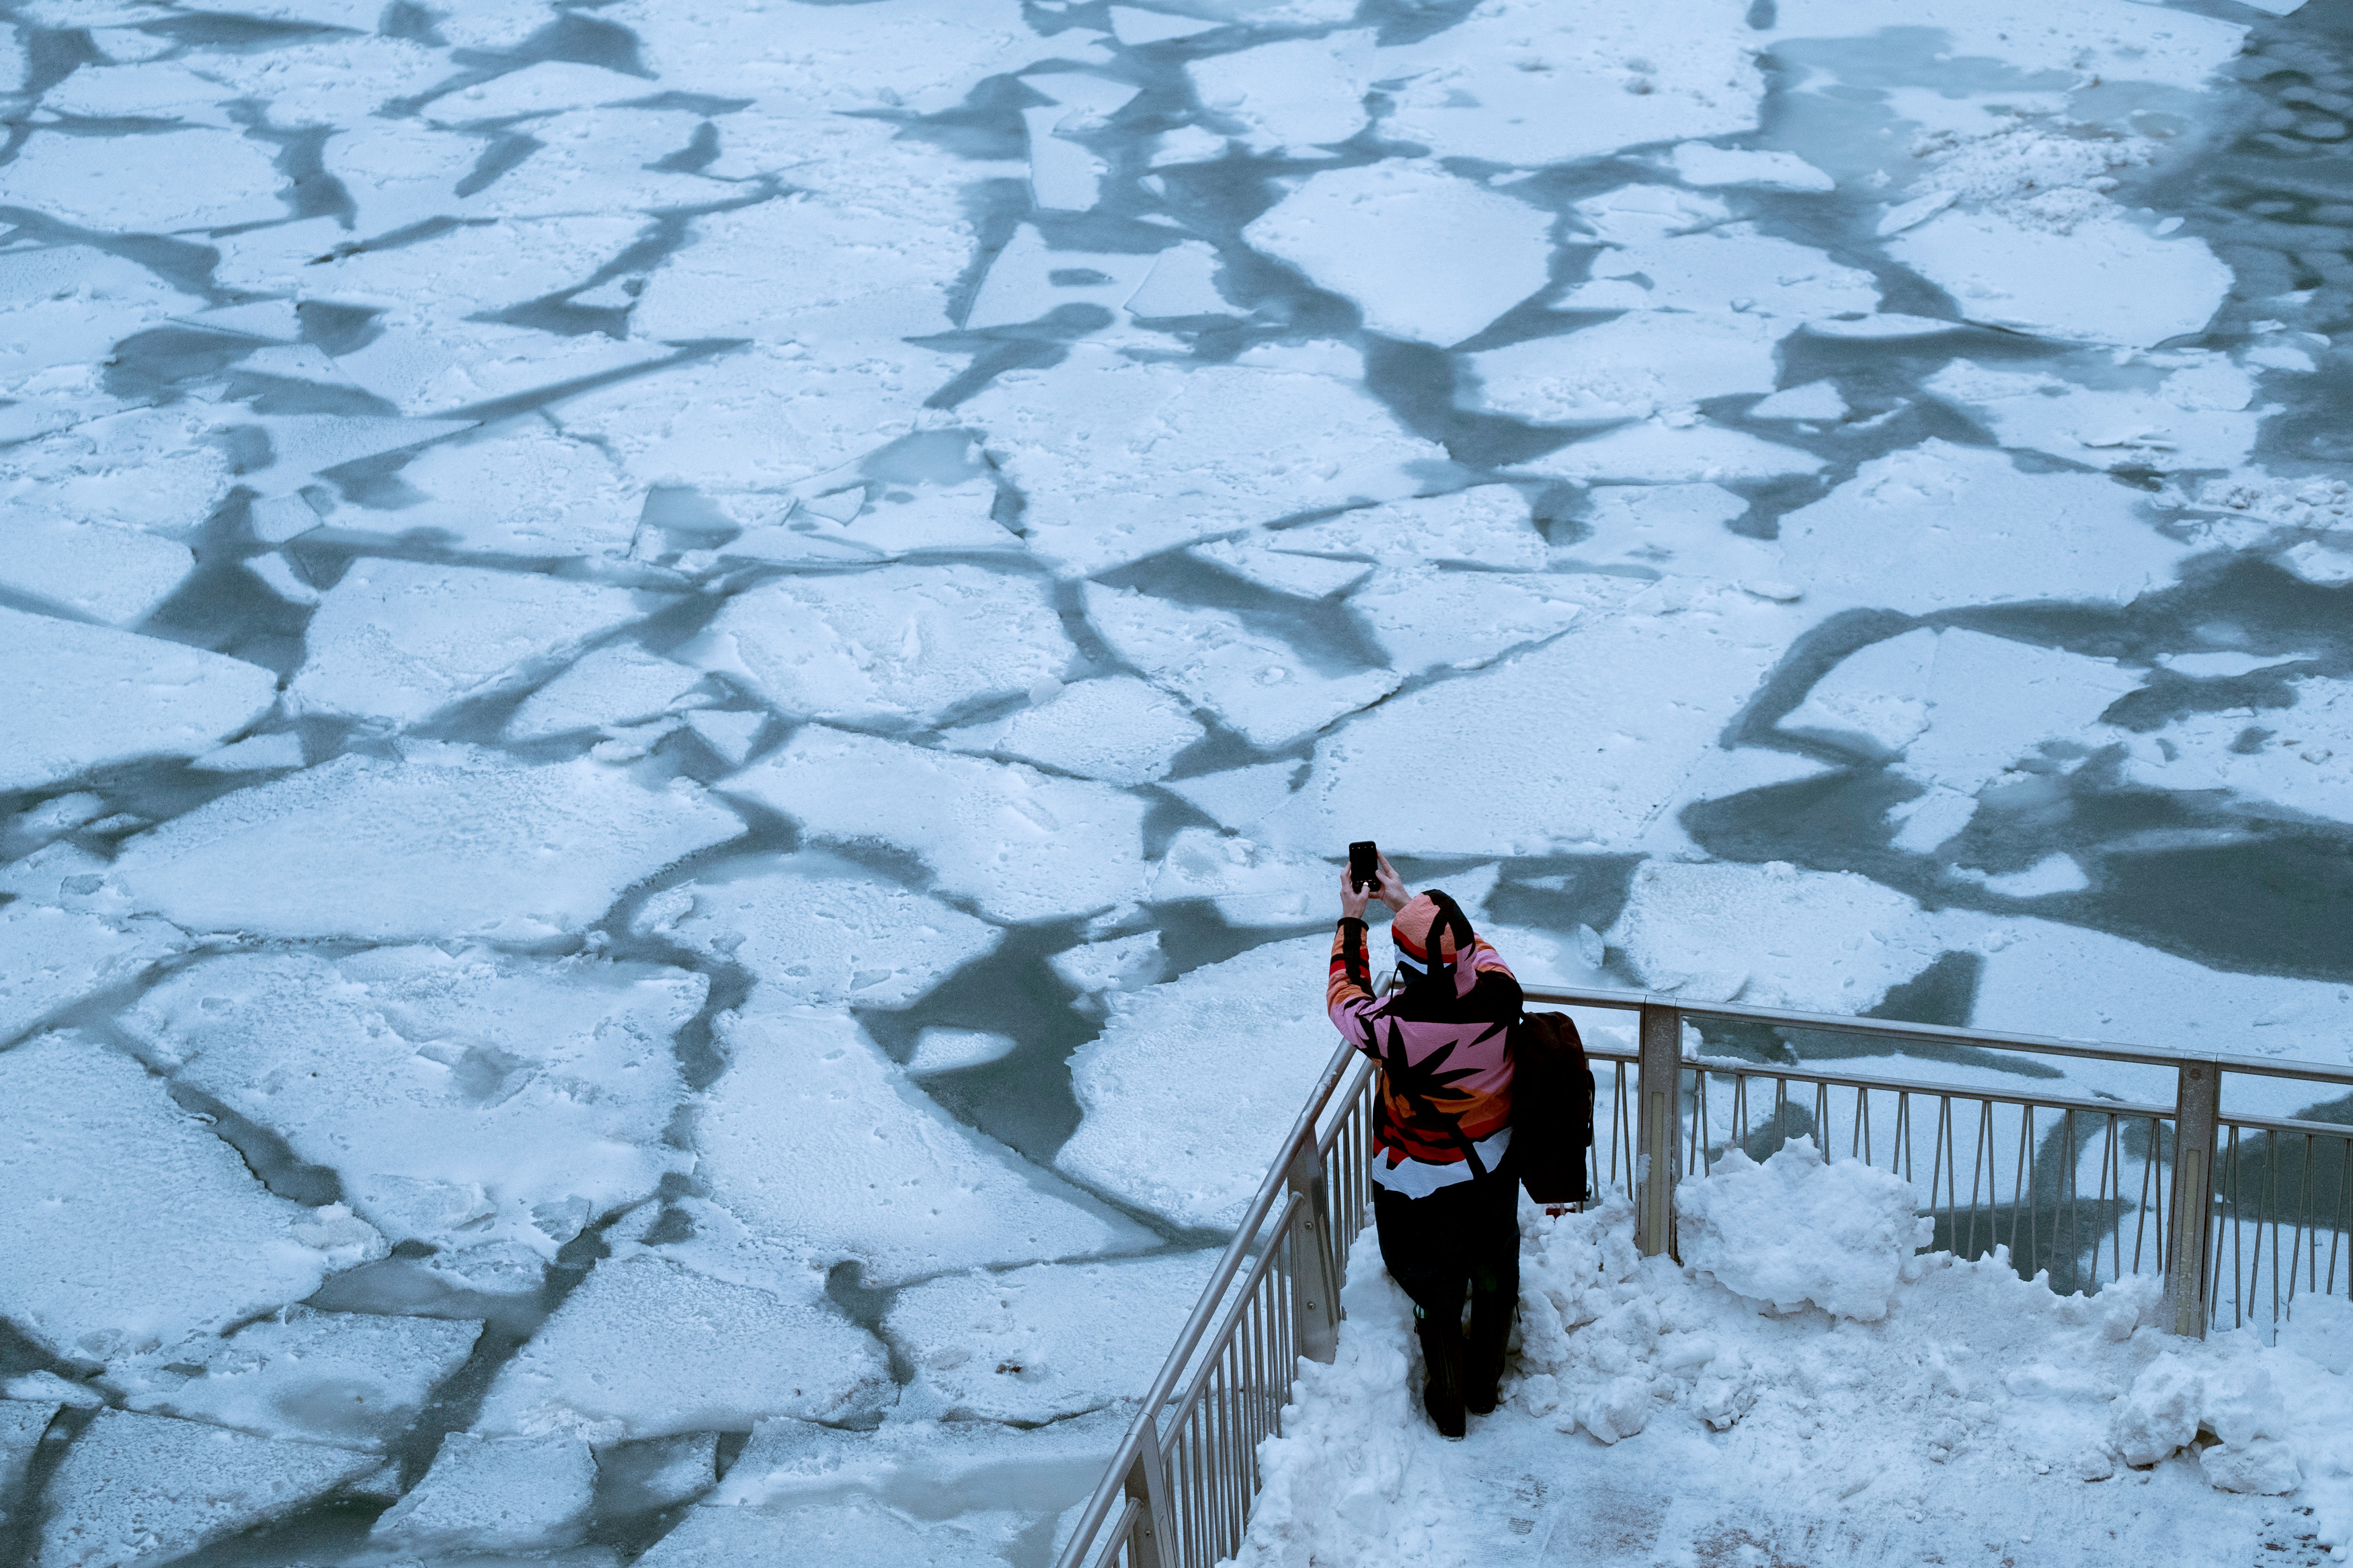 En imágenes: Fotos y videos del frío ártico en Estados Unidos que te pondrán la piel chinita 